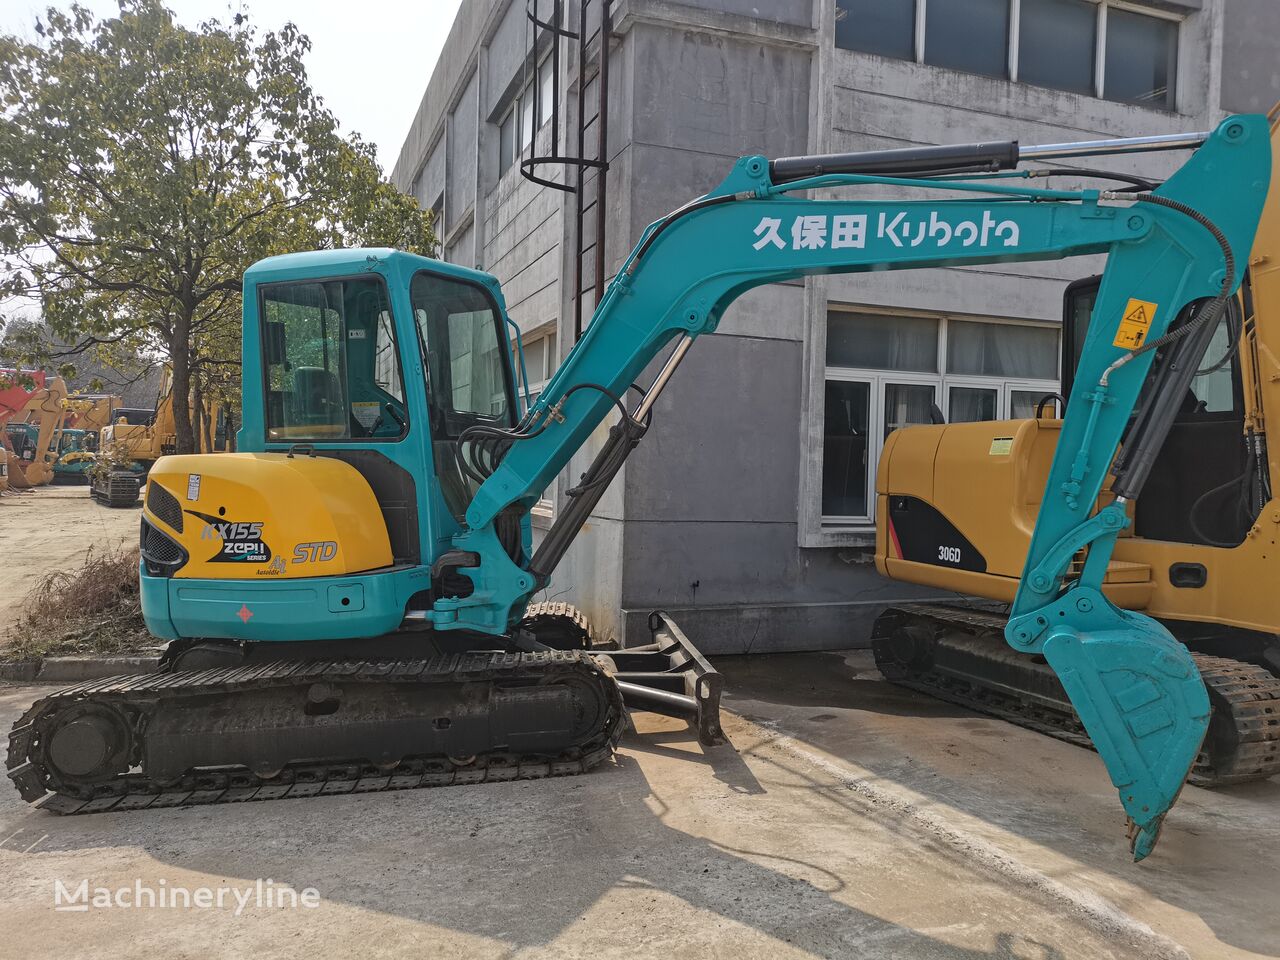 Kubota KX155 Tracked Excavator Used Construction Machienry kāpurķēžu ekskavators